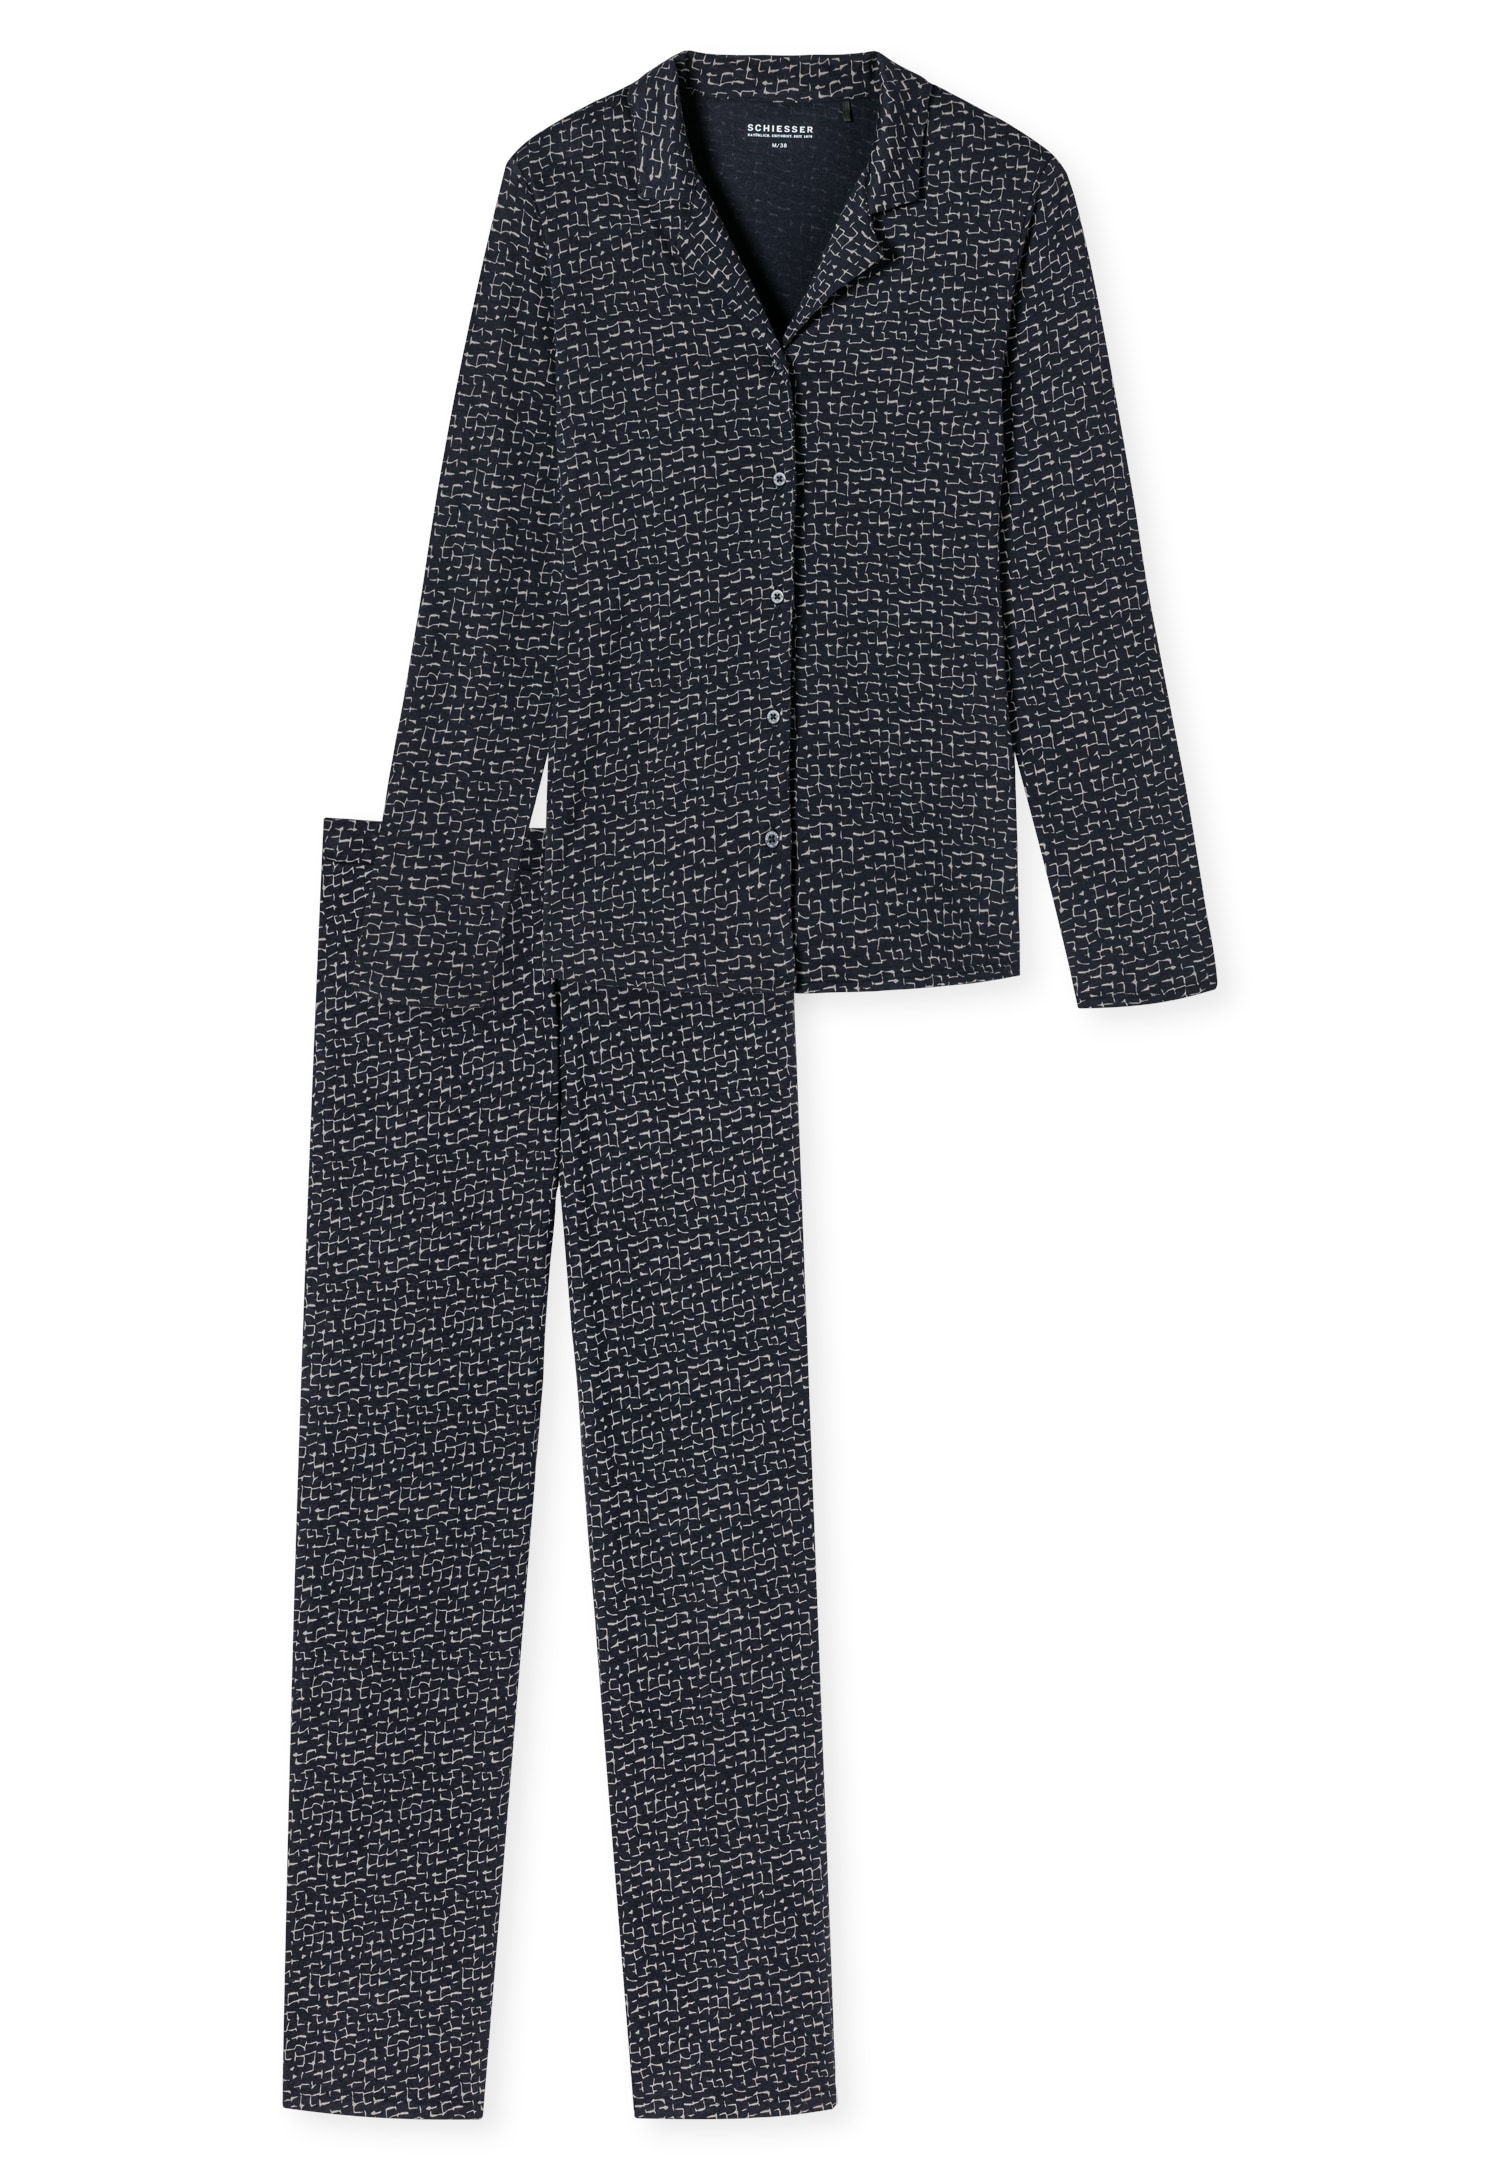 Schiesser Pyjama »"Contemporary Nightwear"«, (Set, 2 tlg.), Oberteil mit Reverskragen und durchgehender, funktionaler Knopfleiste